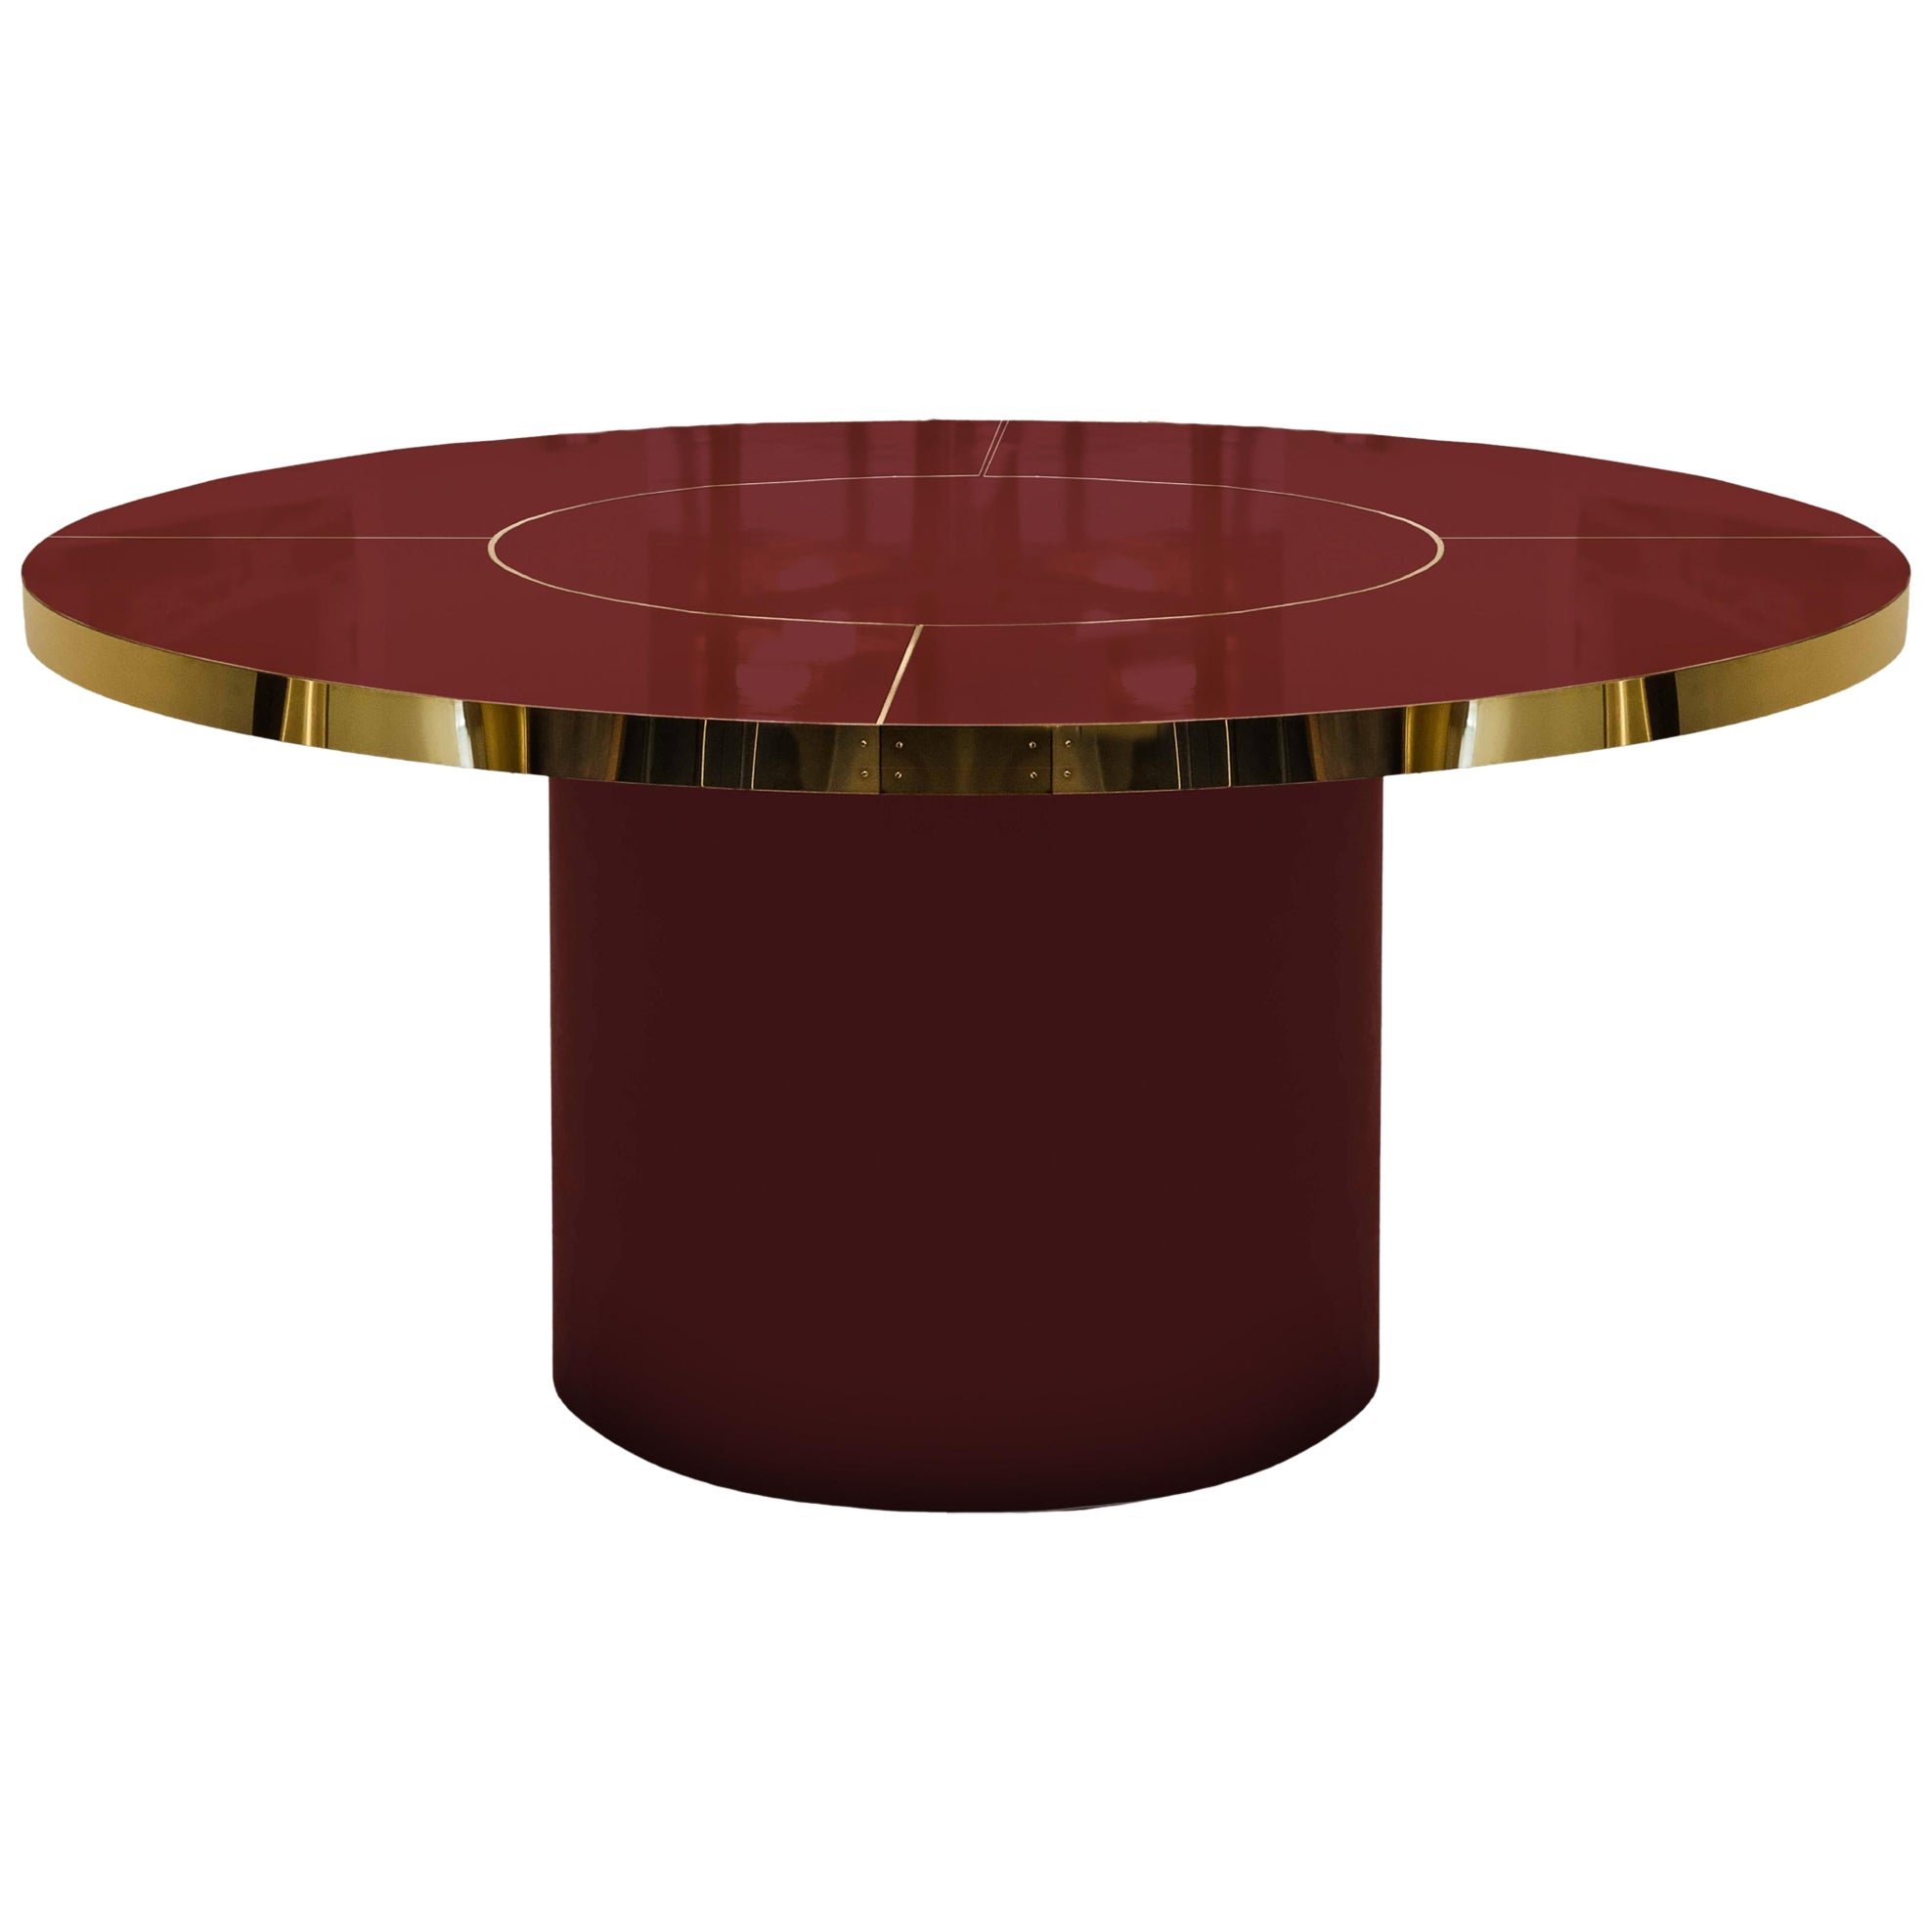 Runder Tisch in Burgunderrot aus hochglänzendem Laminat und Messing mit Intarsien, M